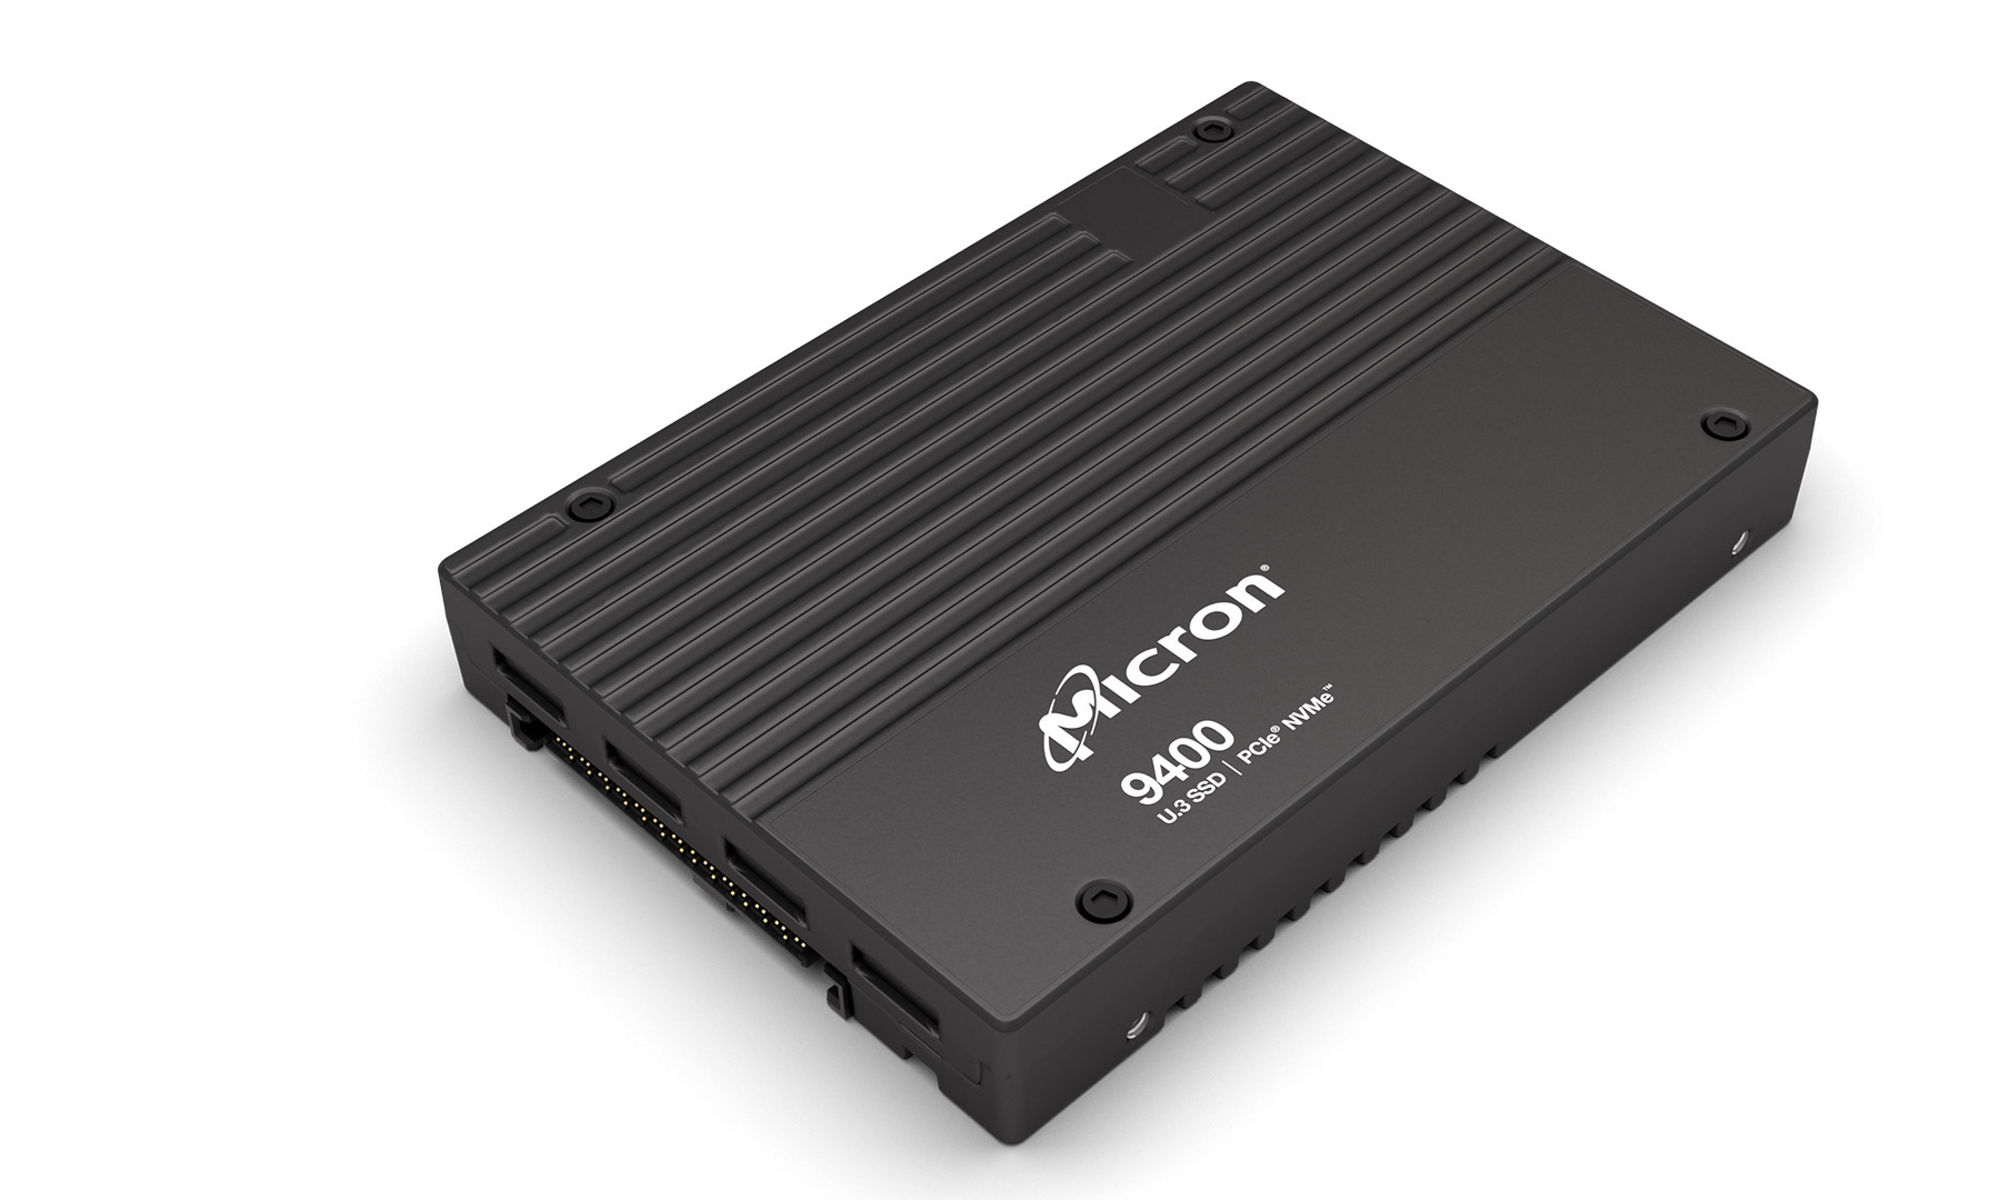 Micron 9400 NVMe SSD | Micron Technology Inc.